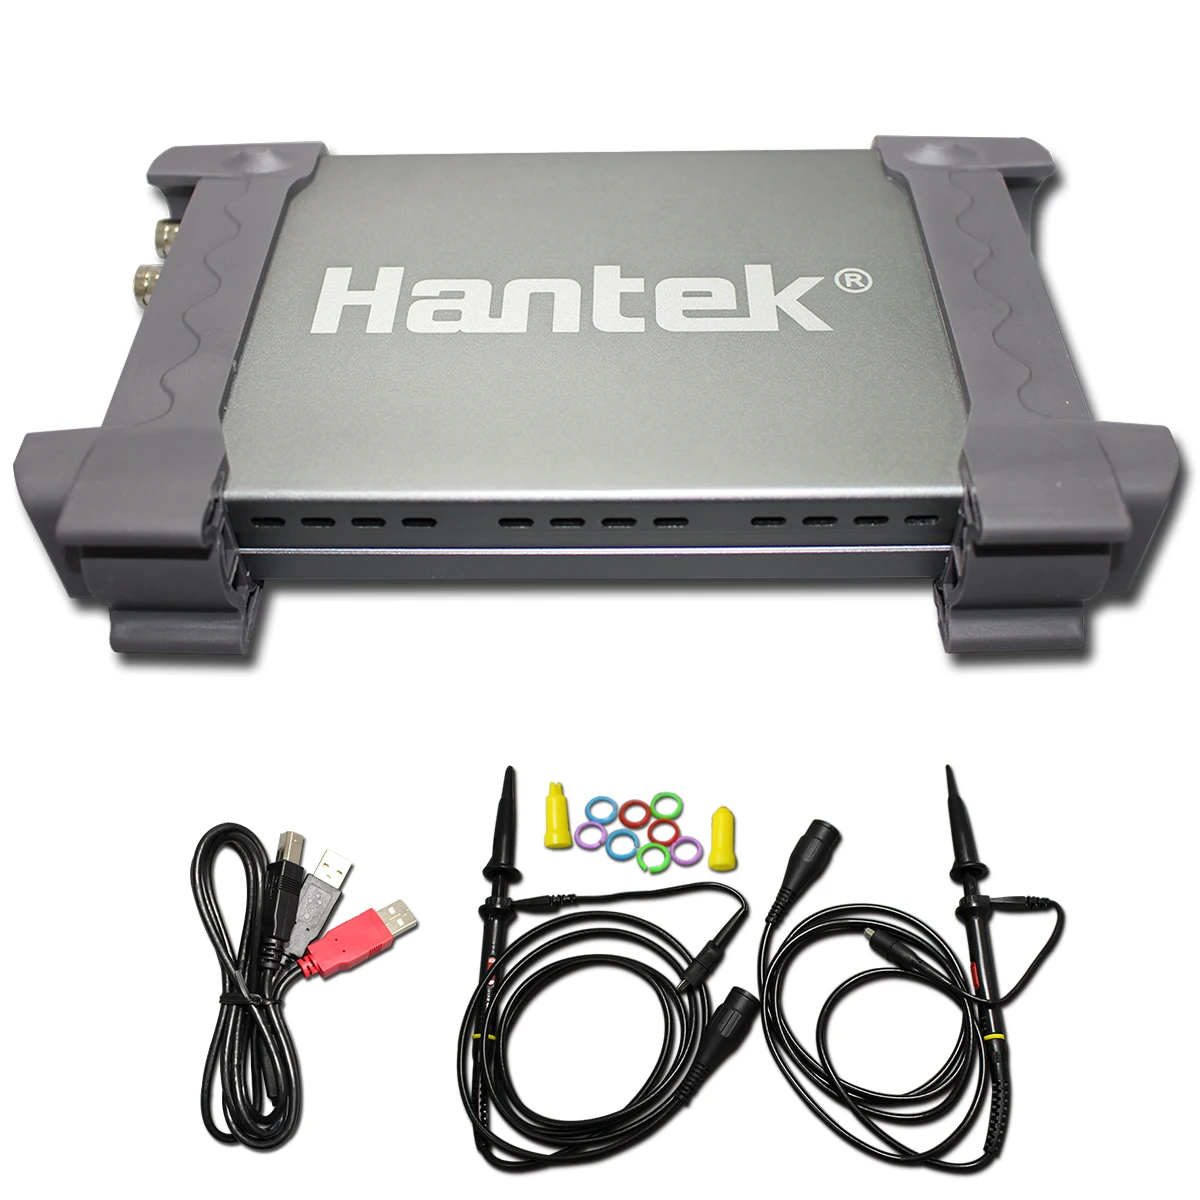 Hantek официальный 6022BE ноутбук ПК USB цифровой осциллограф 2 канала 20 МГц Портативный Osciloscopio